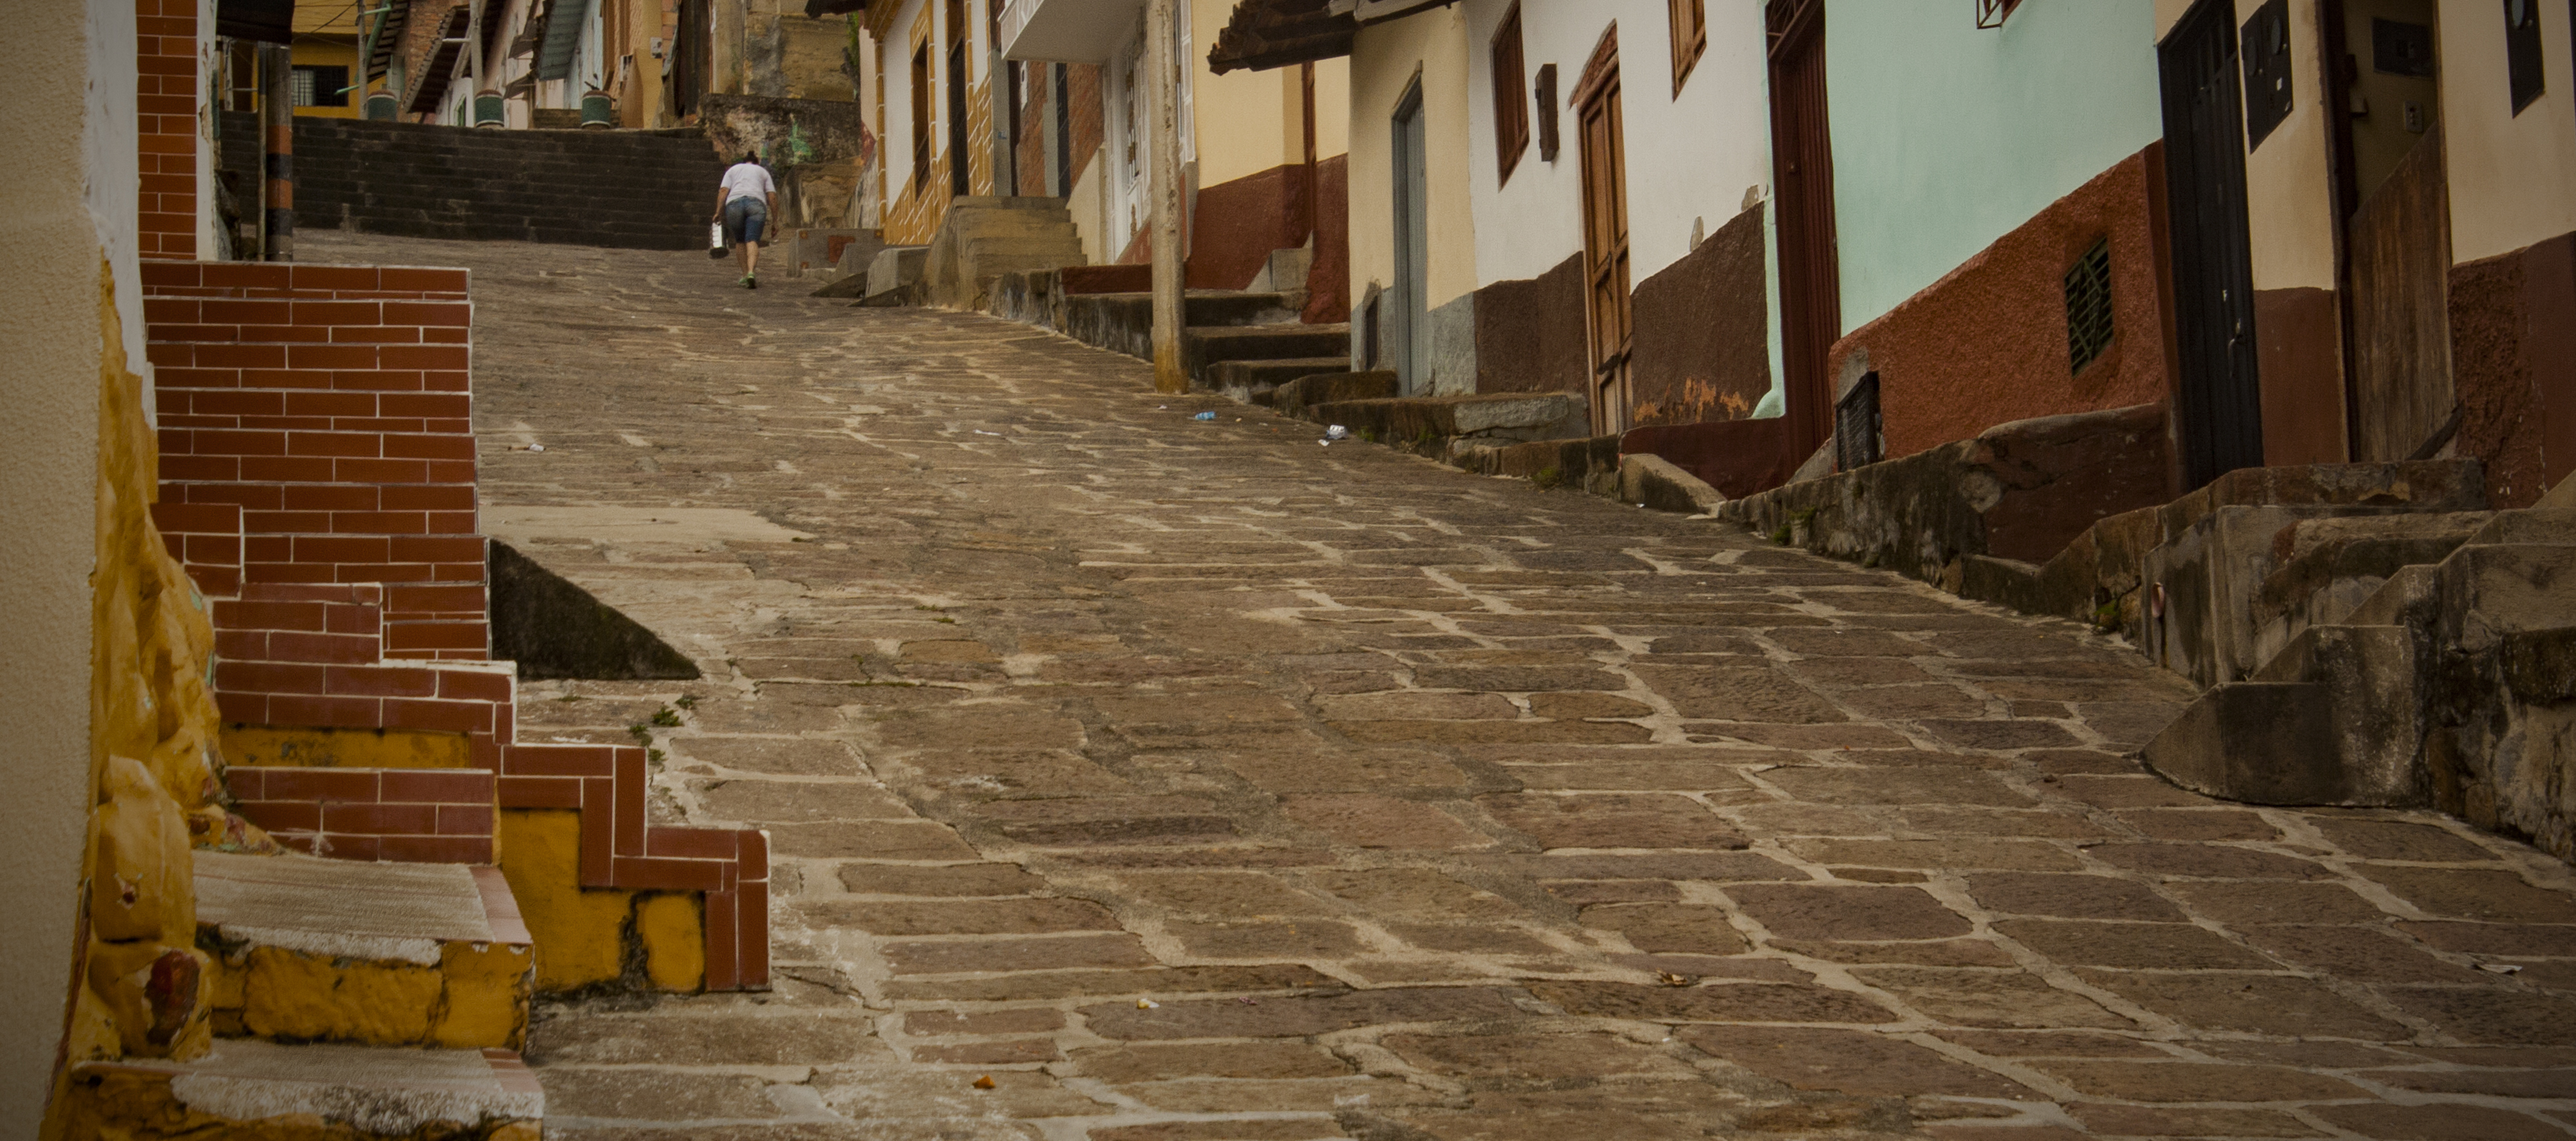 Las escaleras de los mosaicos rojos San Gil. Santander, Colombia